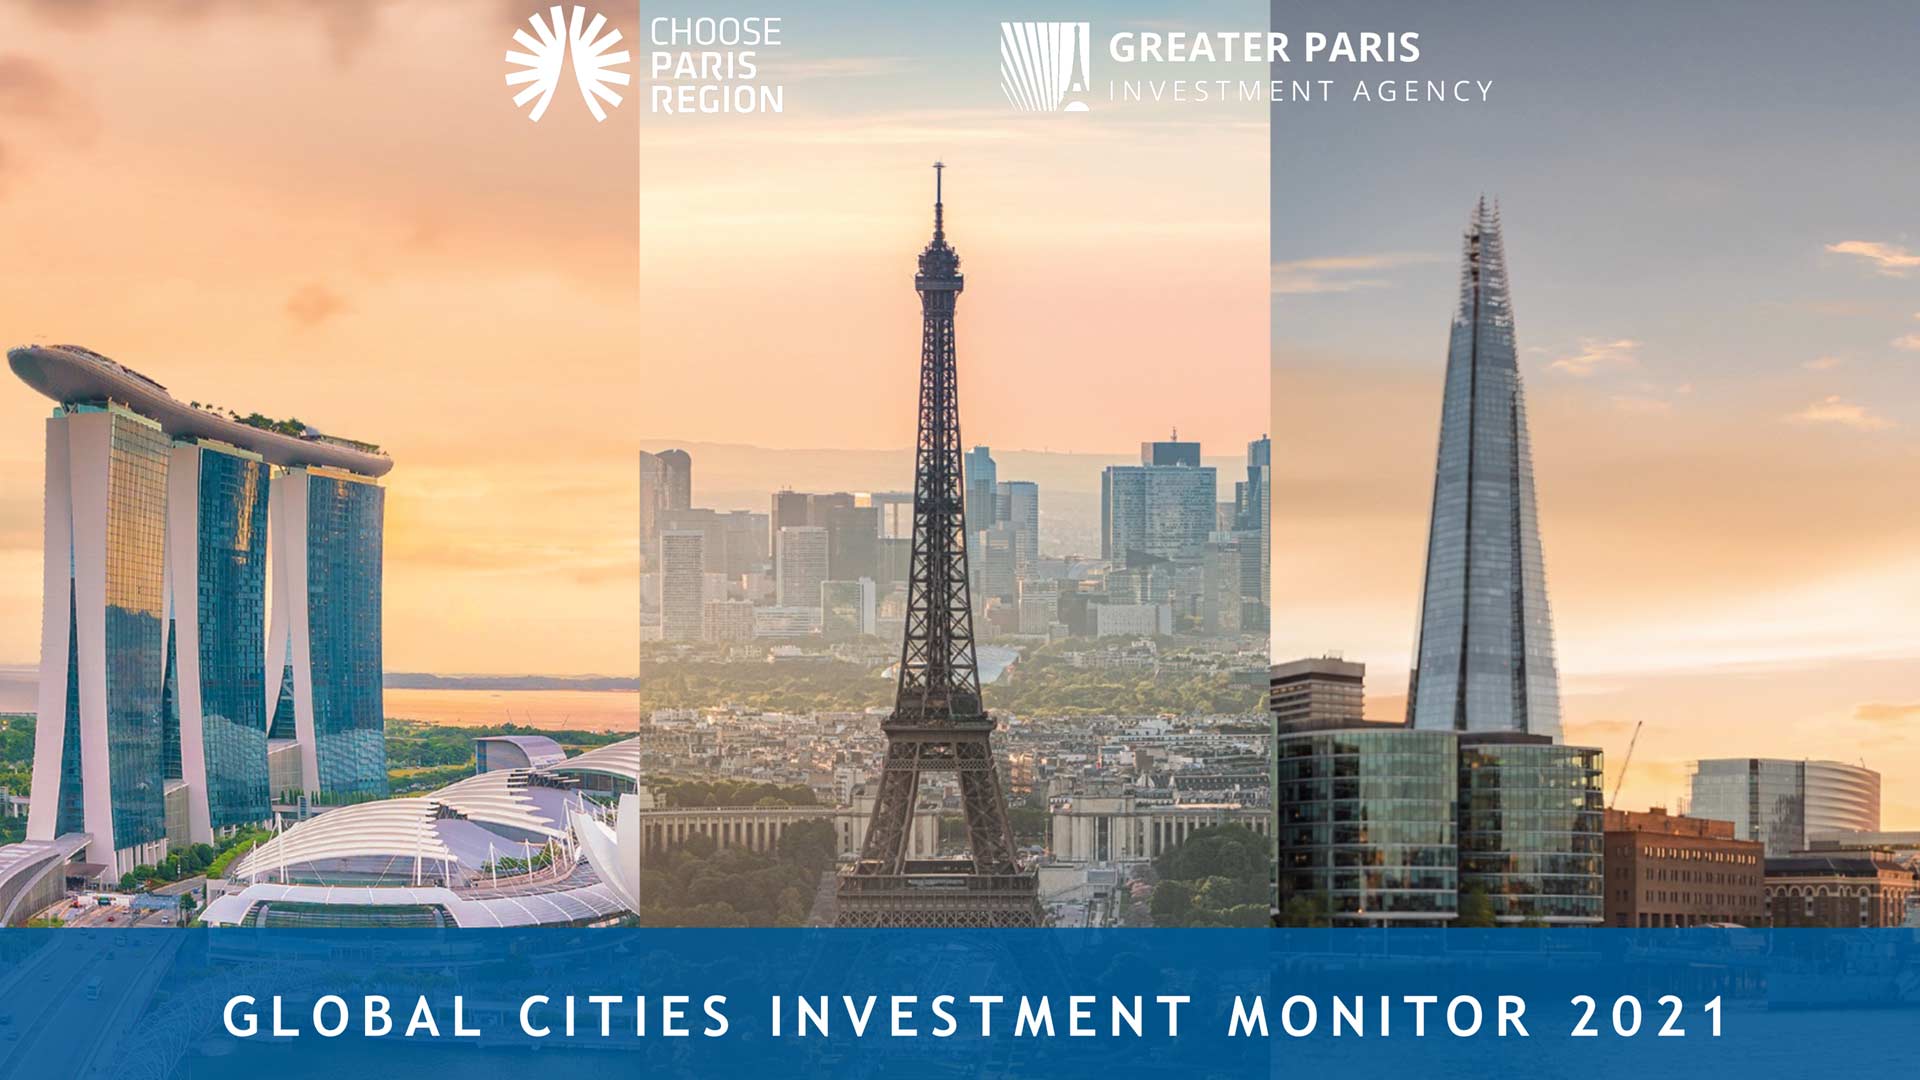 Global Cities Investment Monitor 2021 - Paris Region: Ongekende hoogten bereikt in 2021